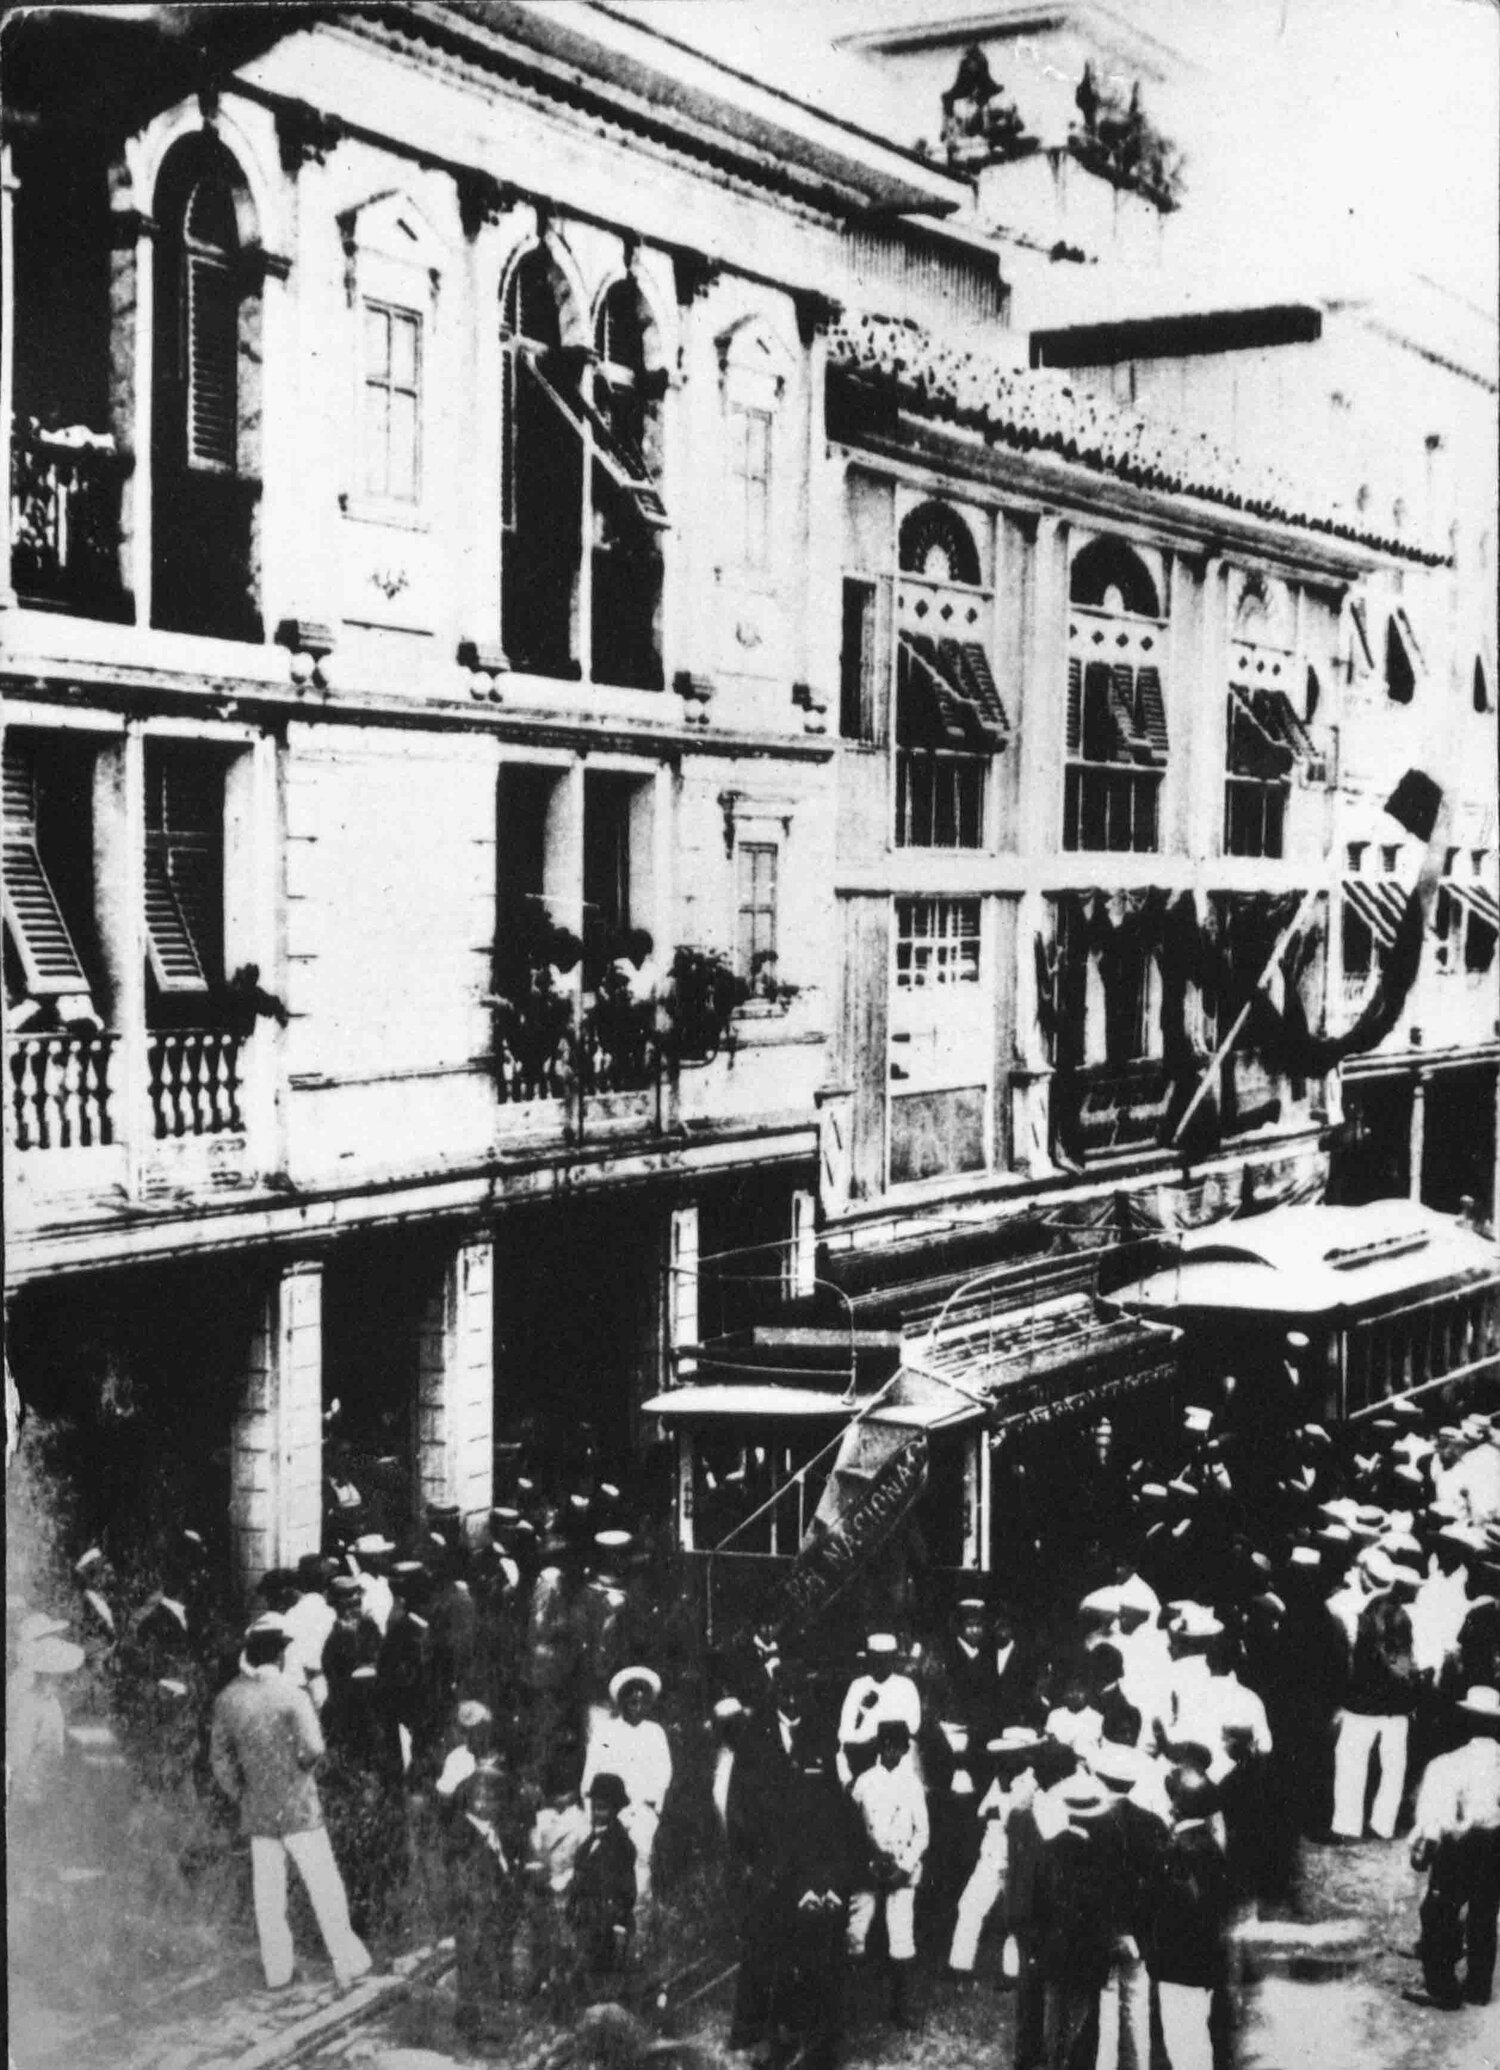 Teatro Olmedo de Guayaquil, 1912. Archivo histórico del Ministerio de Cultura y Patrimonio